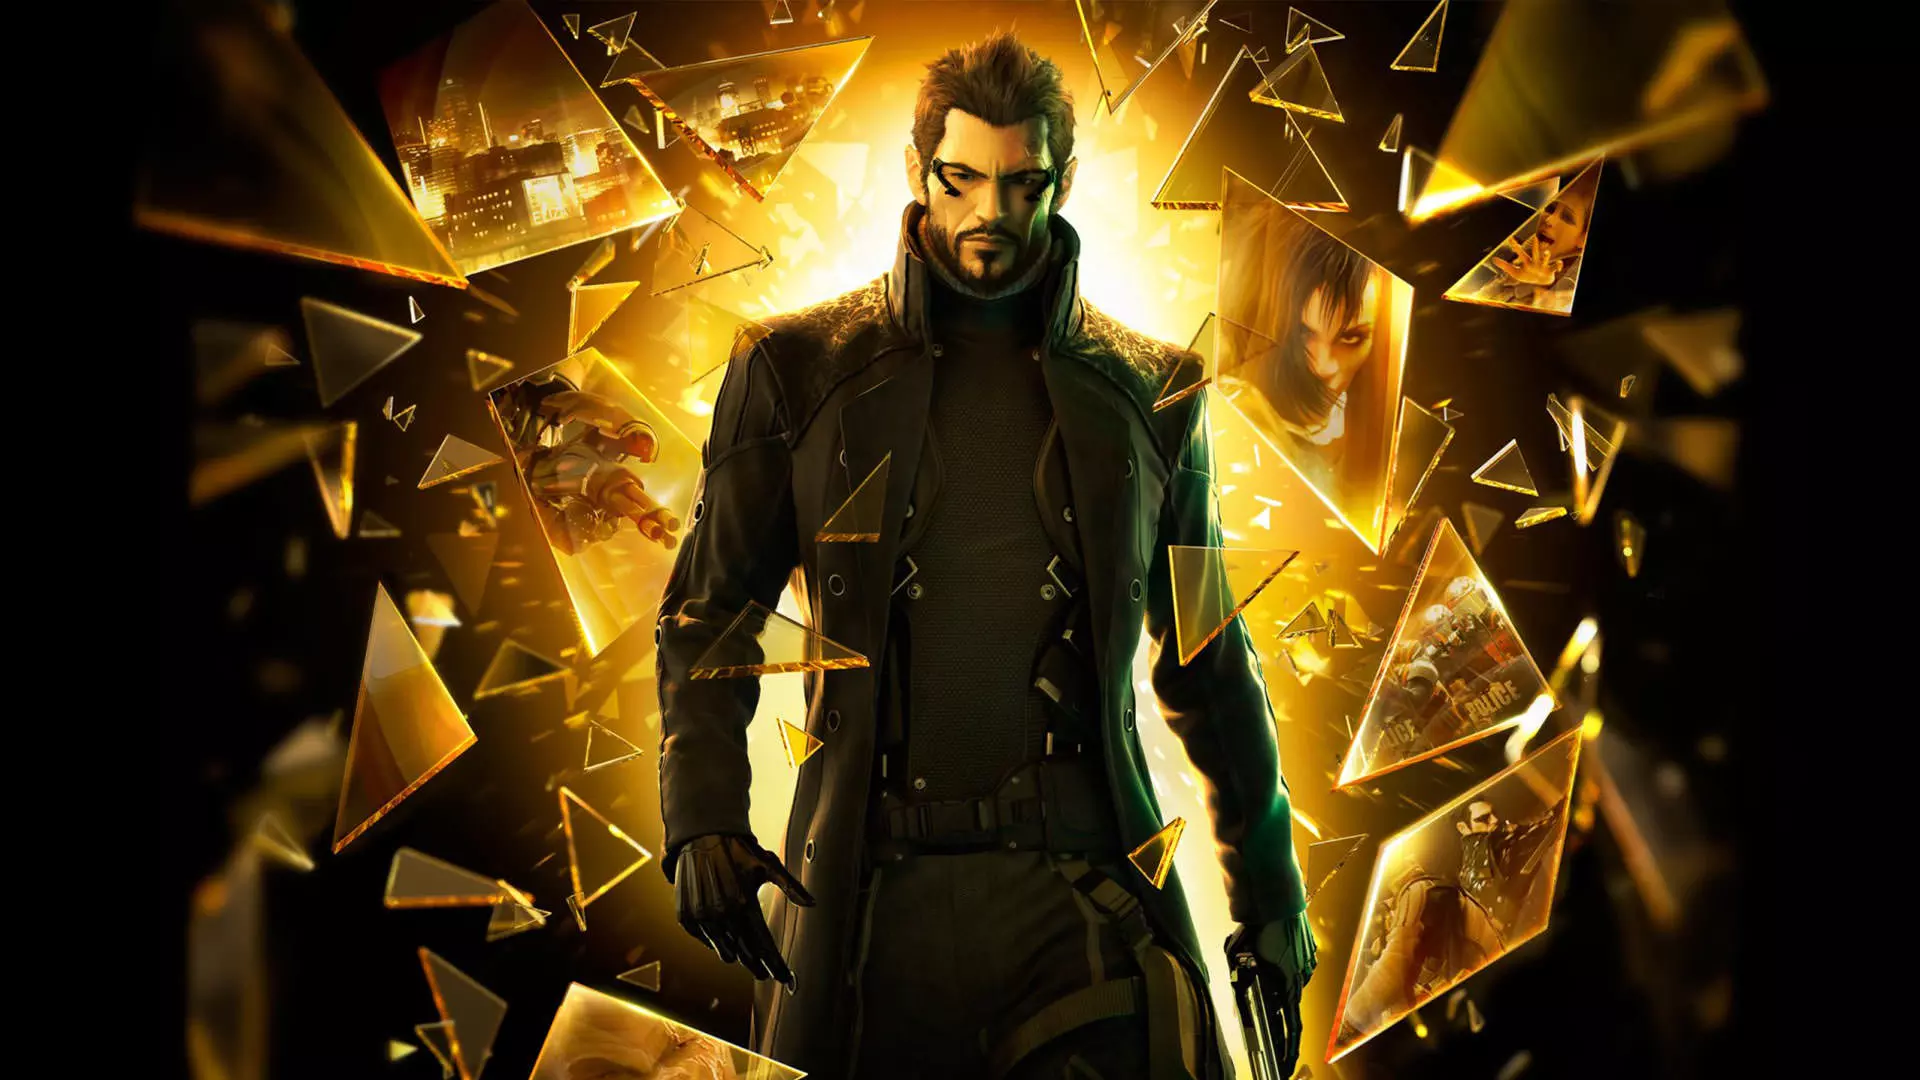 Adam Jensen in the Deus Ex: Human Revolution game poster